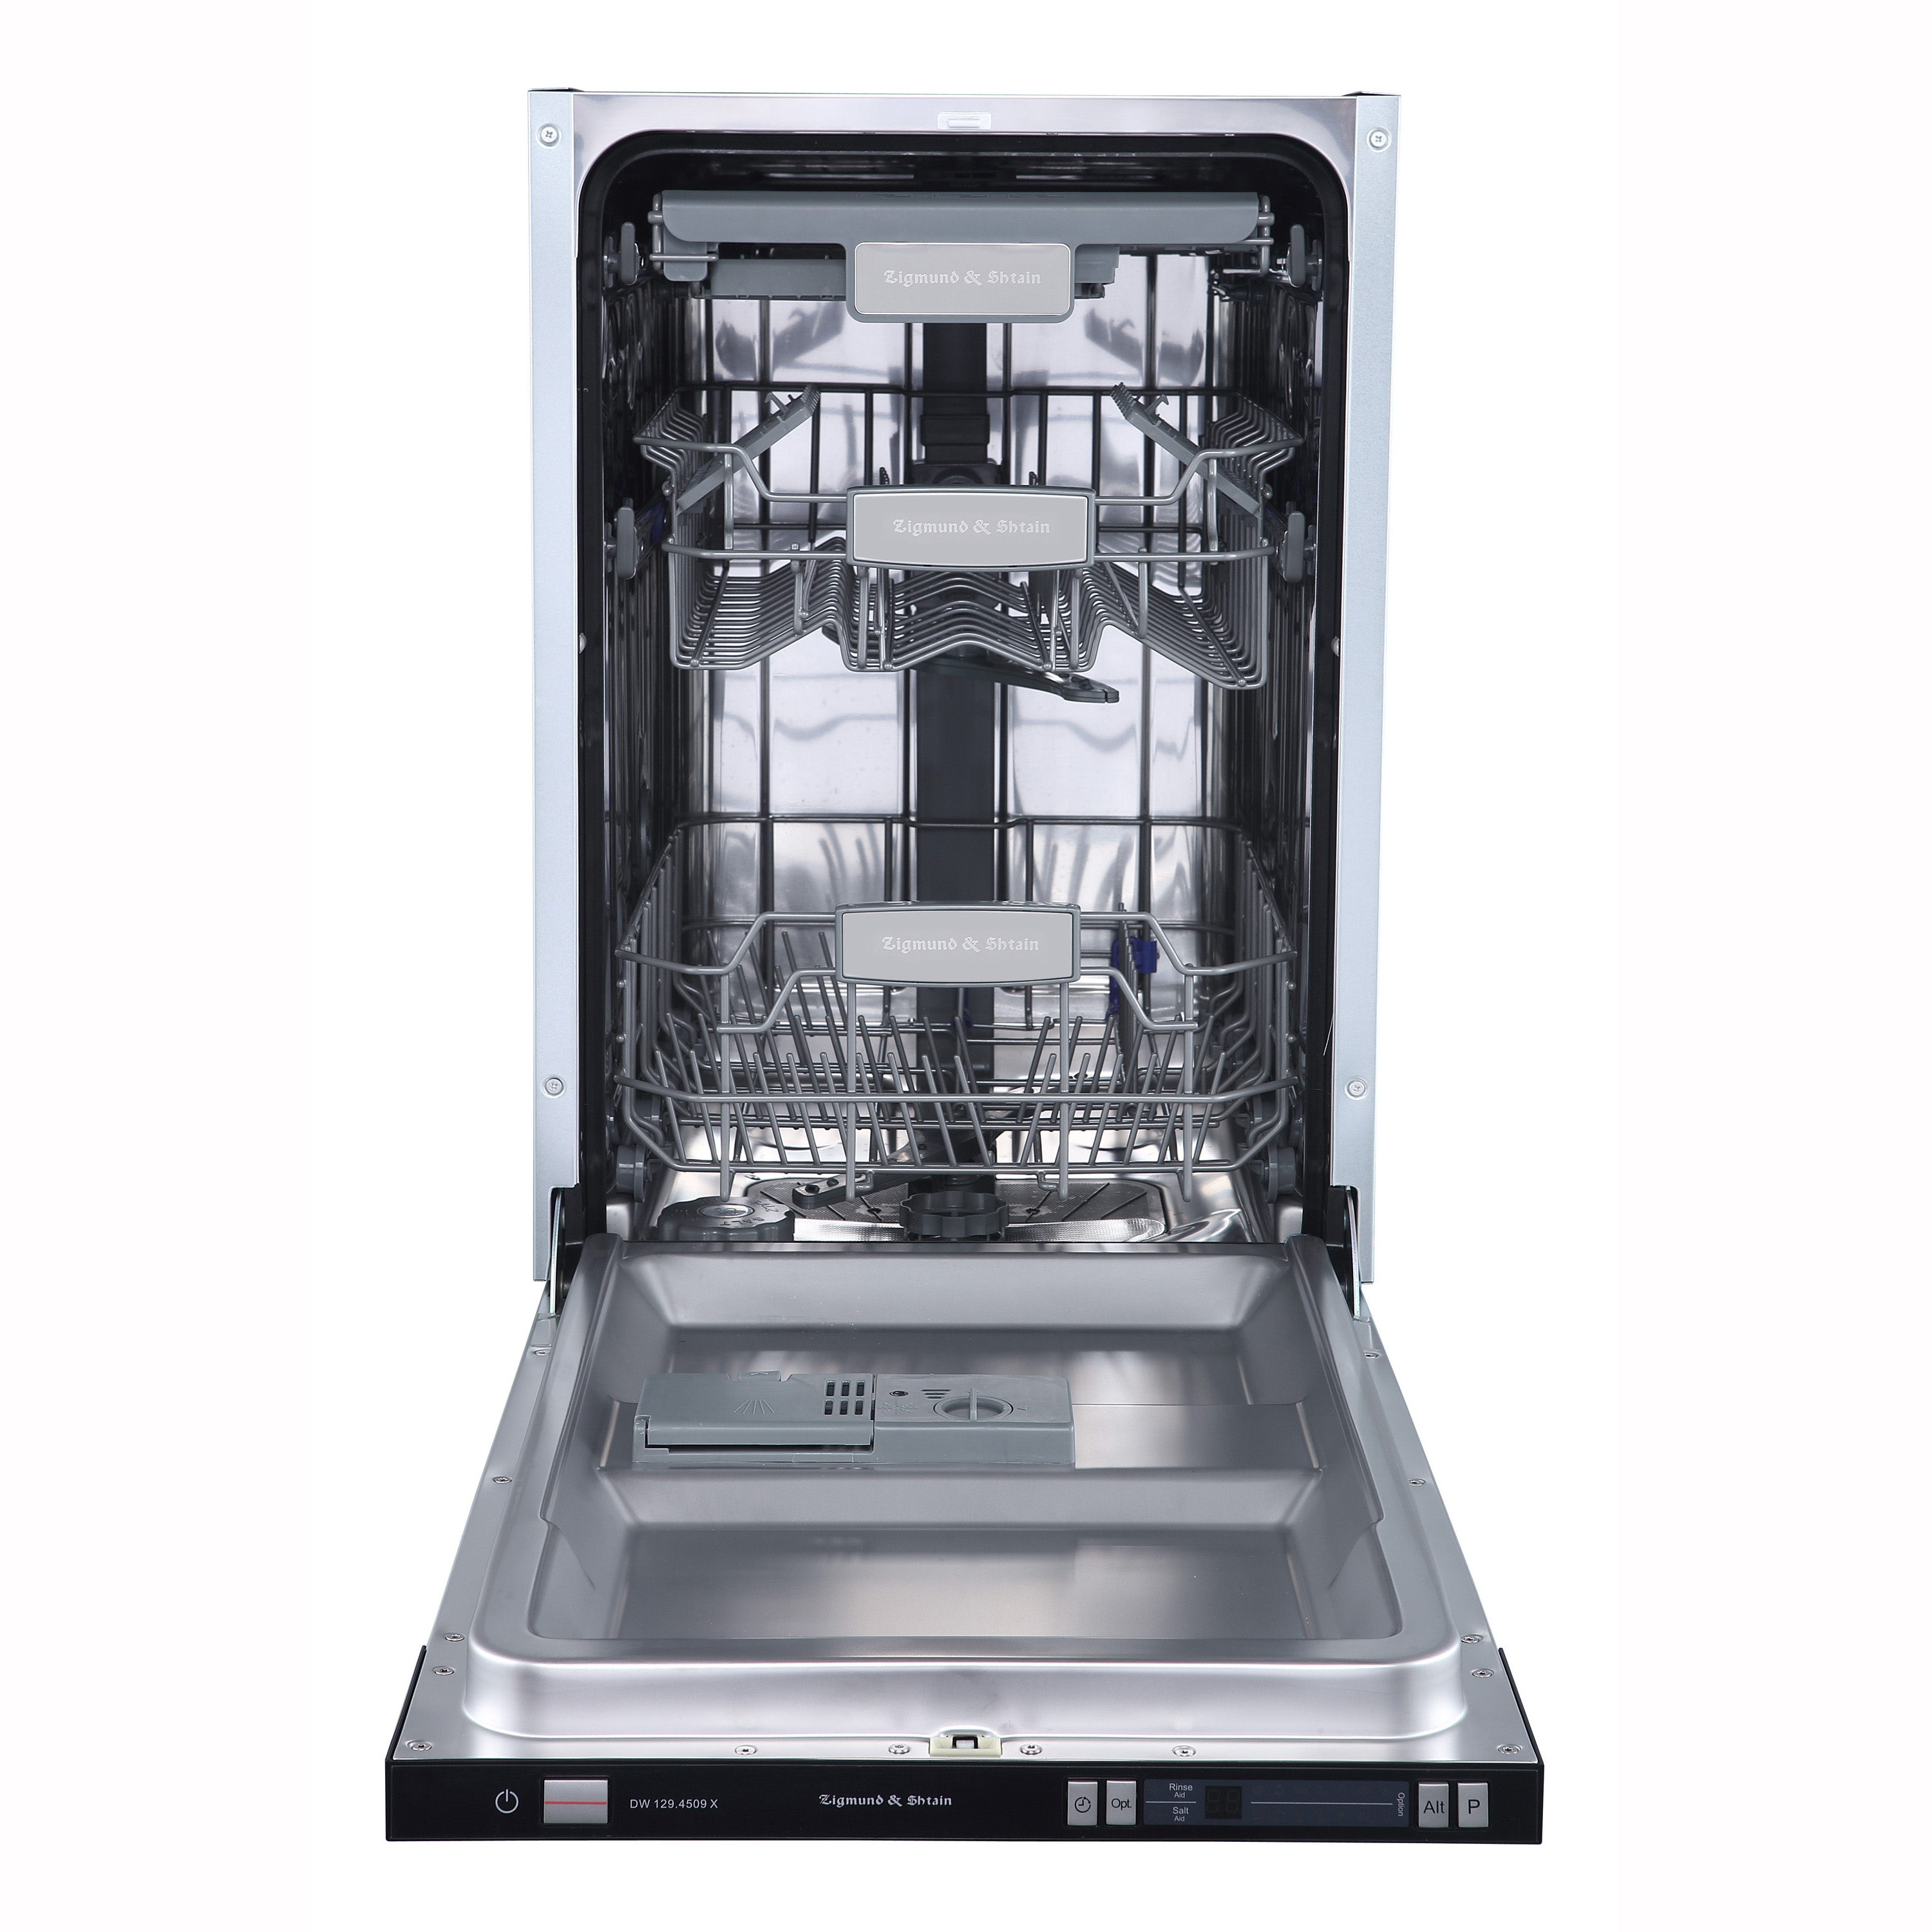 Встраиваемая посудомоечная машина Zigmund & Shtain DW 129.4509 X встраиваемая посудомоечная машина smeg stl232cl